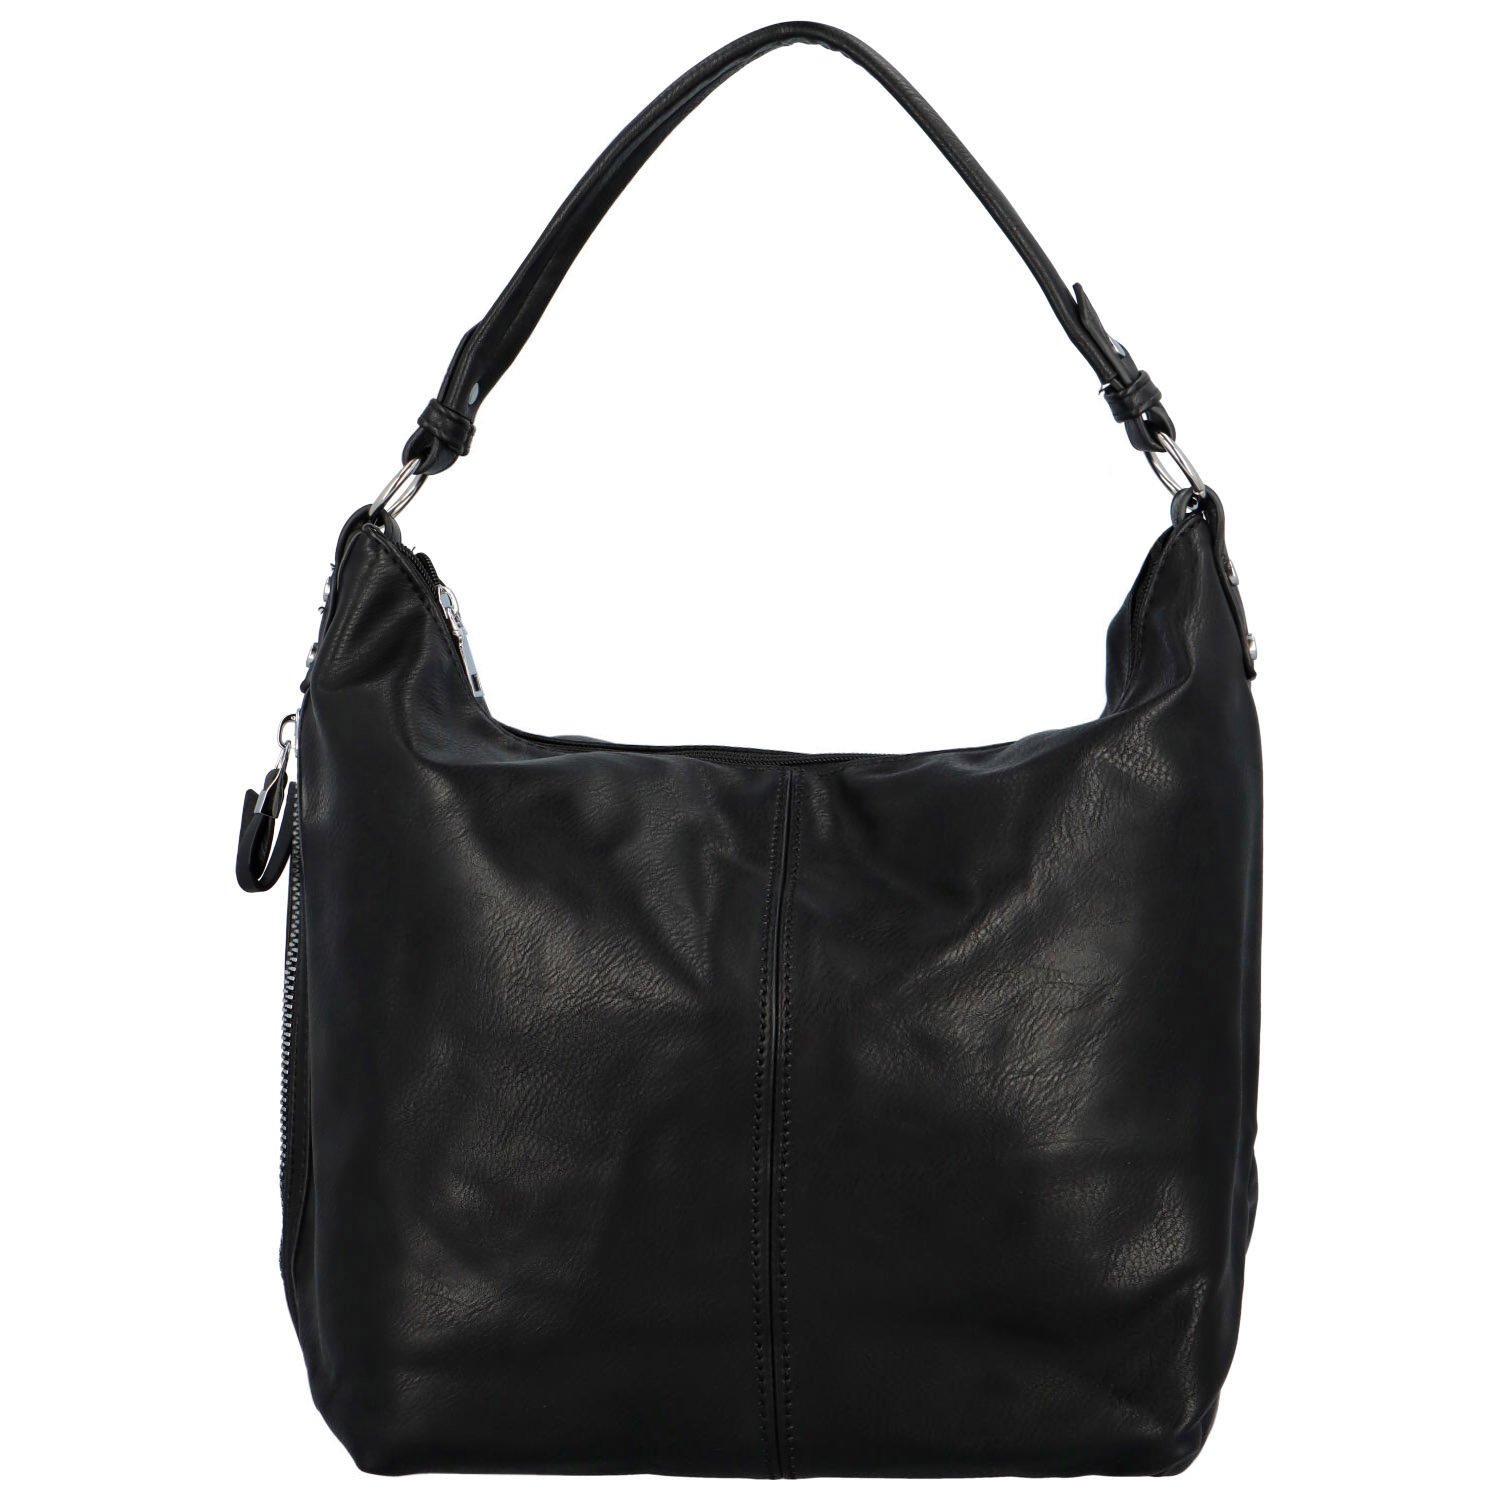 Dámská kabelka na rameno černá - Romina & Co Bags Elianora